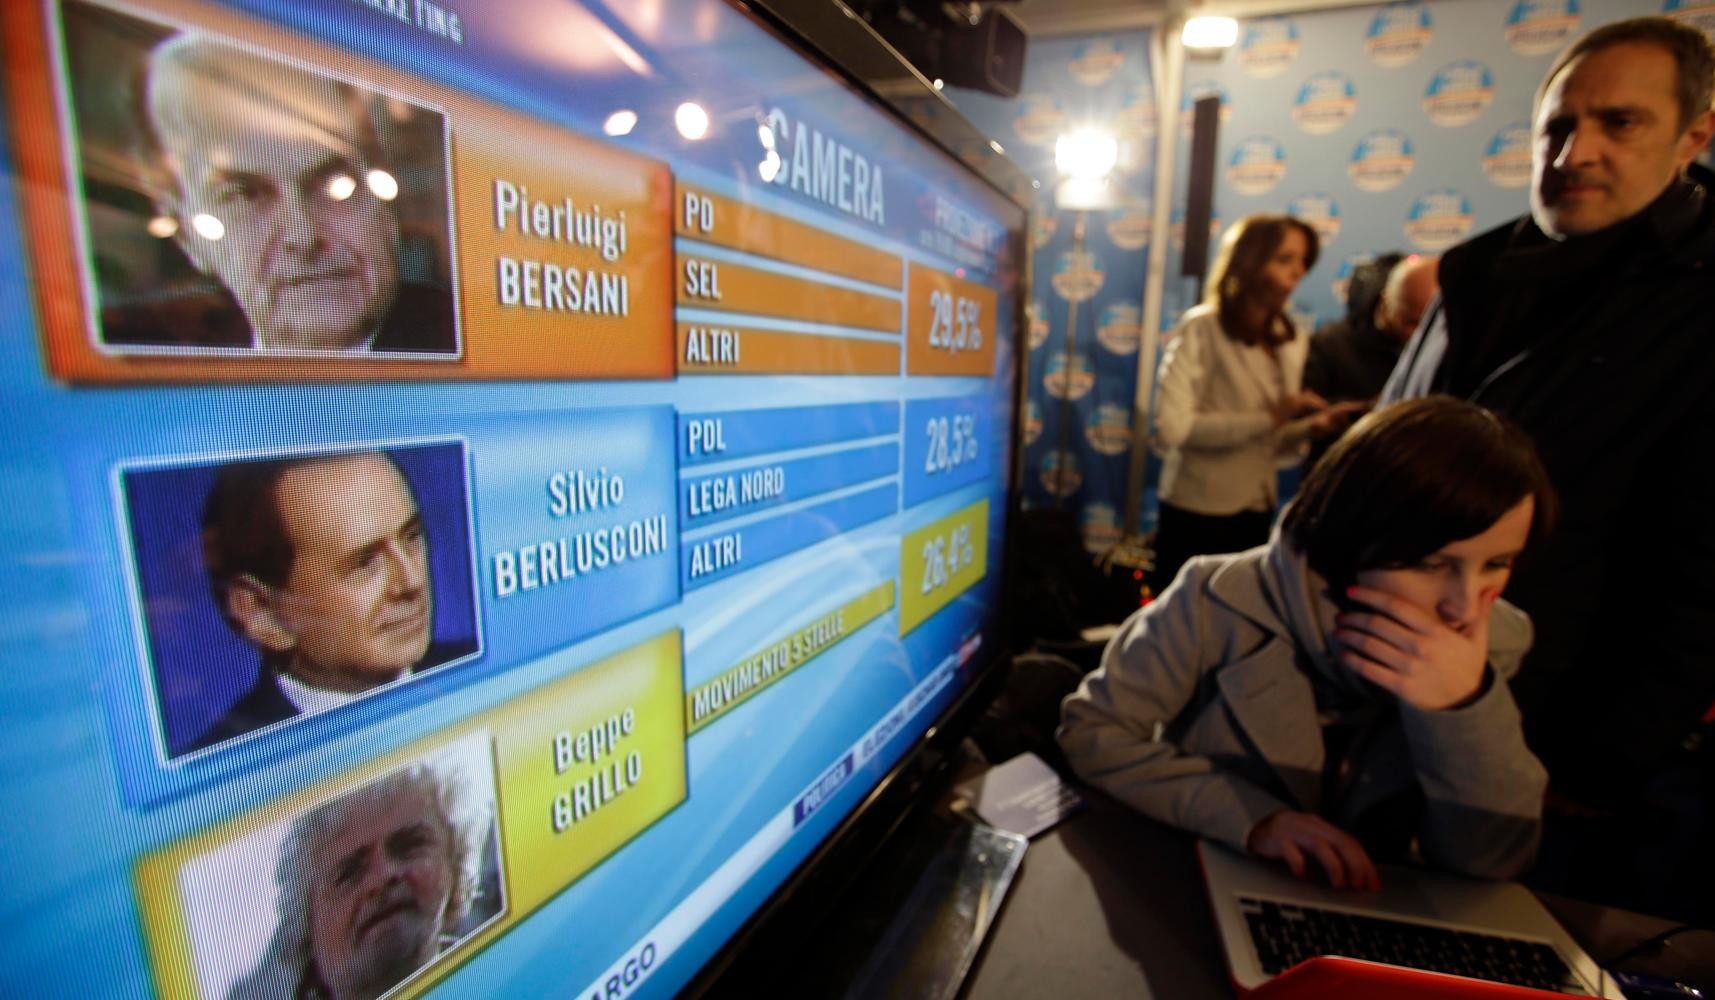 Ιταλικές εκλογές: Διαφορές και ομοιότητες. Των Στ. Μπαγιώργου και Ανδρ. Νεφελούδη